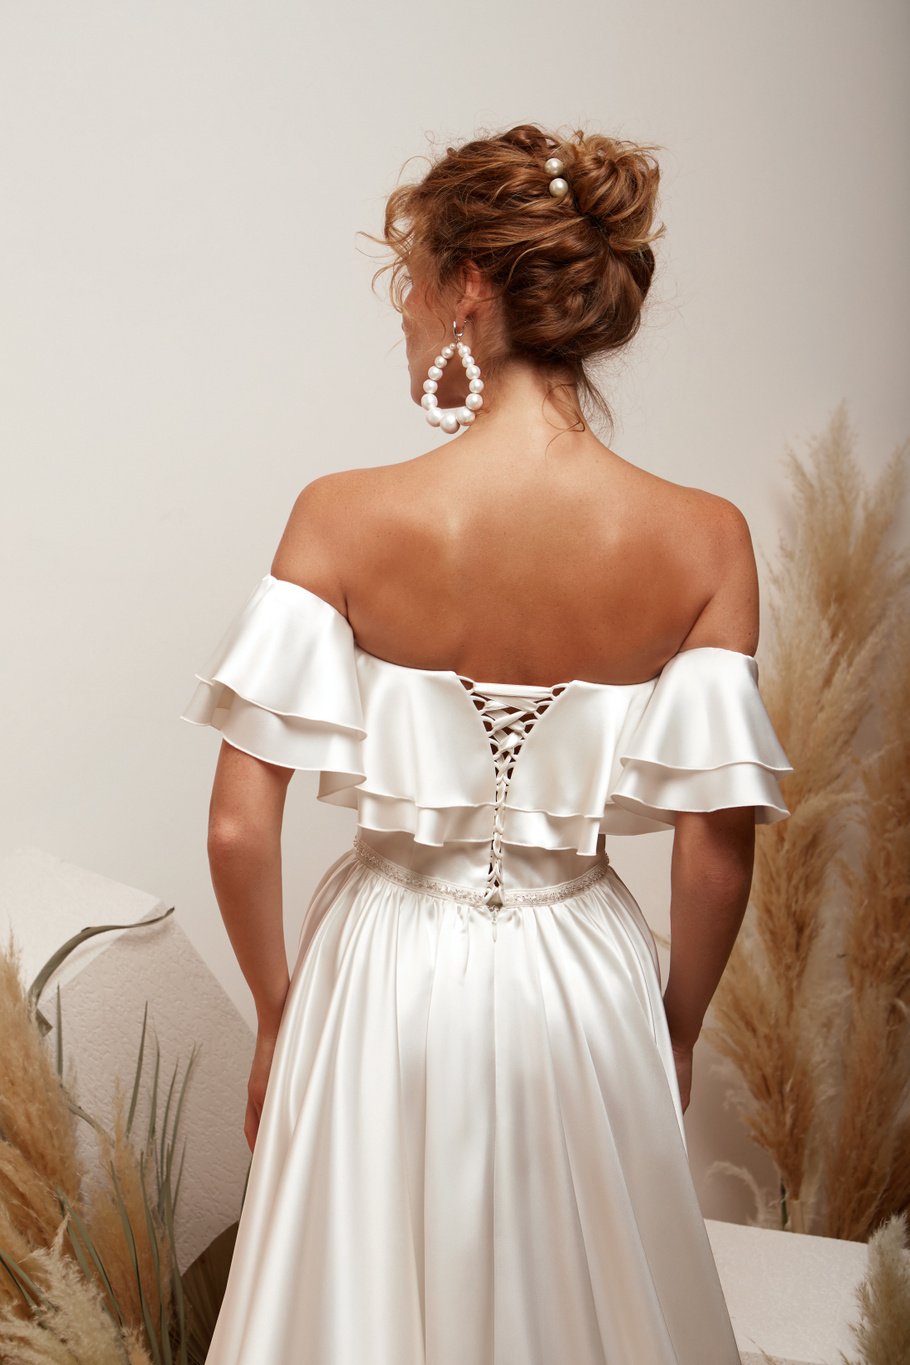 Купить свадебное платье «Магнолия» Мэрри Марк из коллекции 2020 года в Воронеже